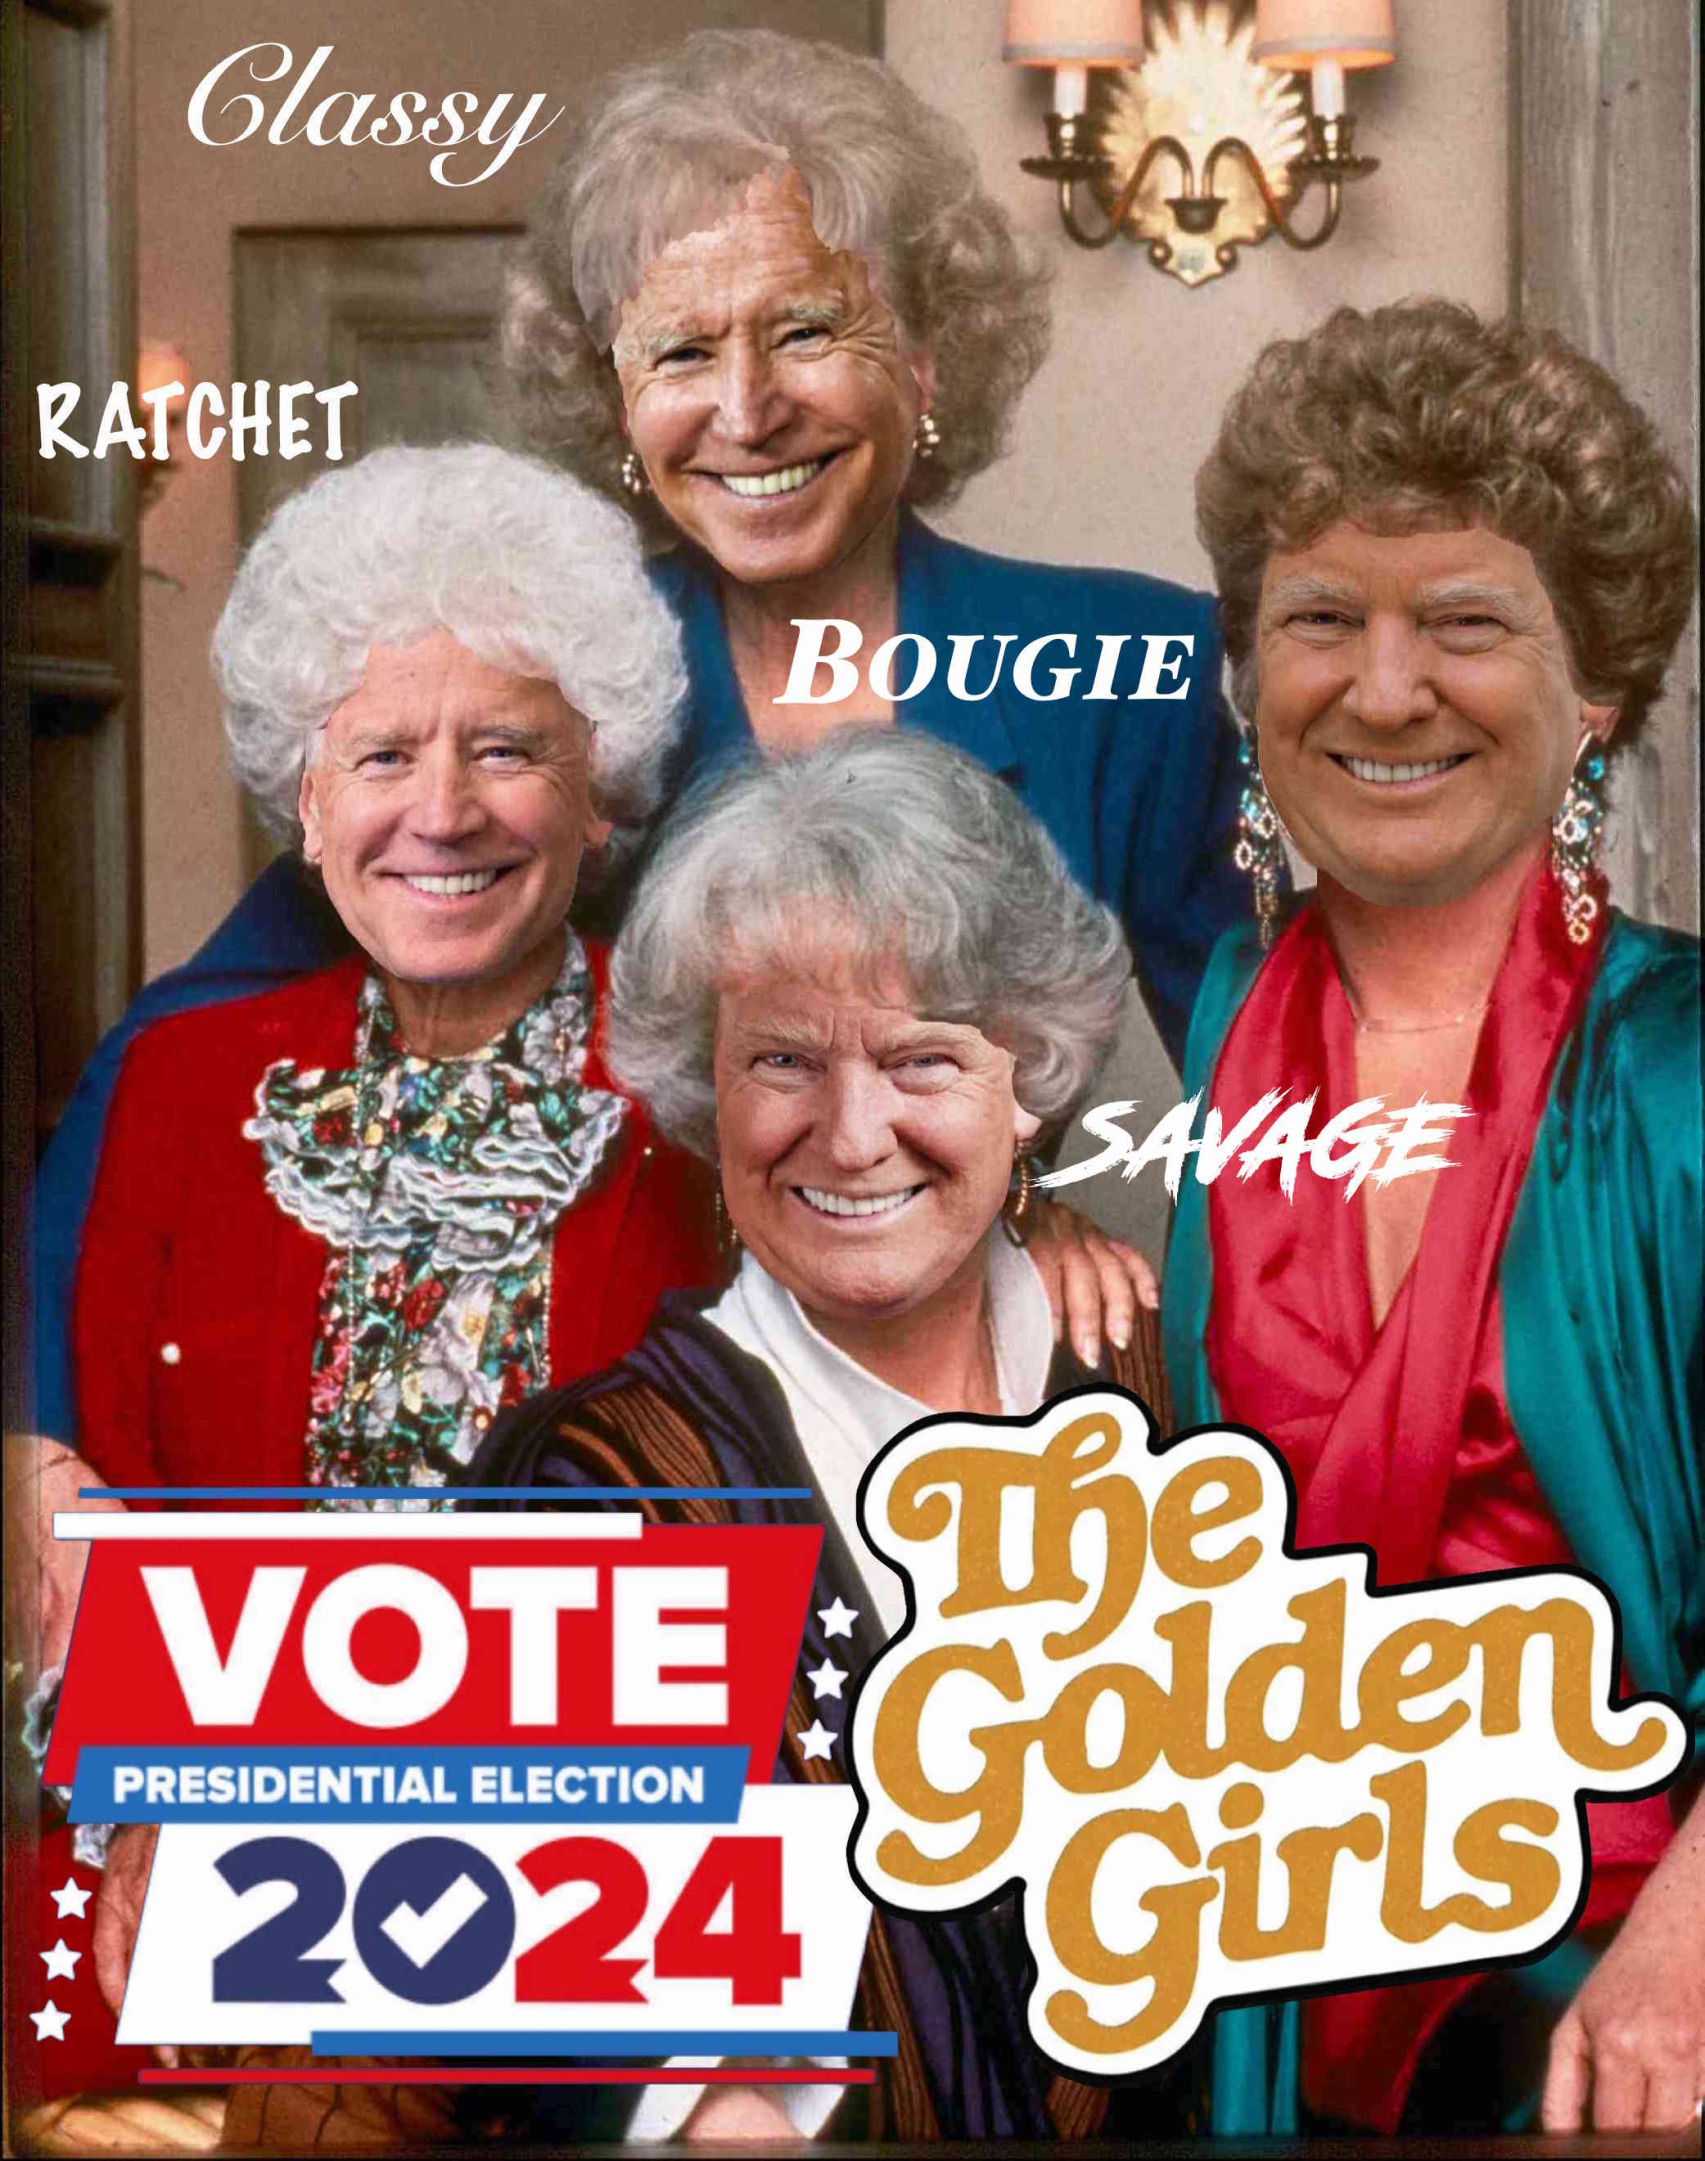 Golden Girls Biden Trump Vote Presidential Election 2024 Meme Blank Meme Template